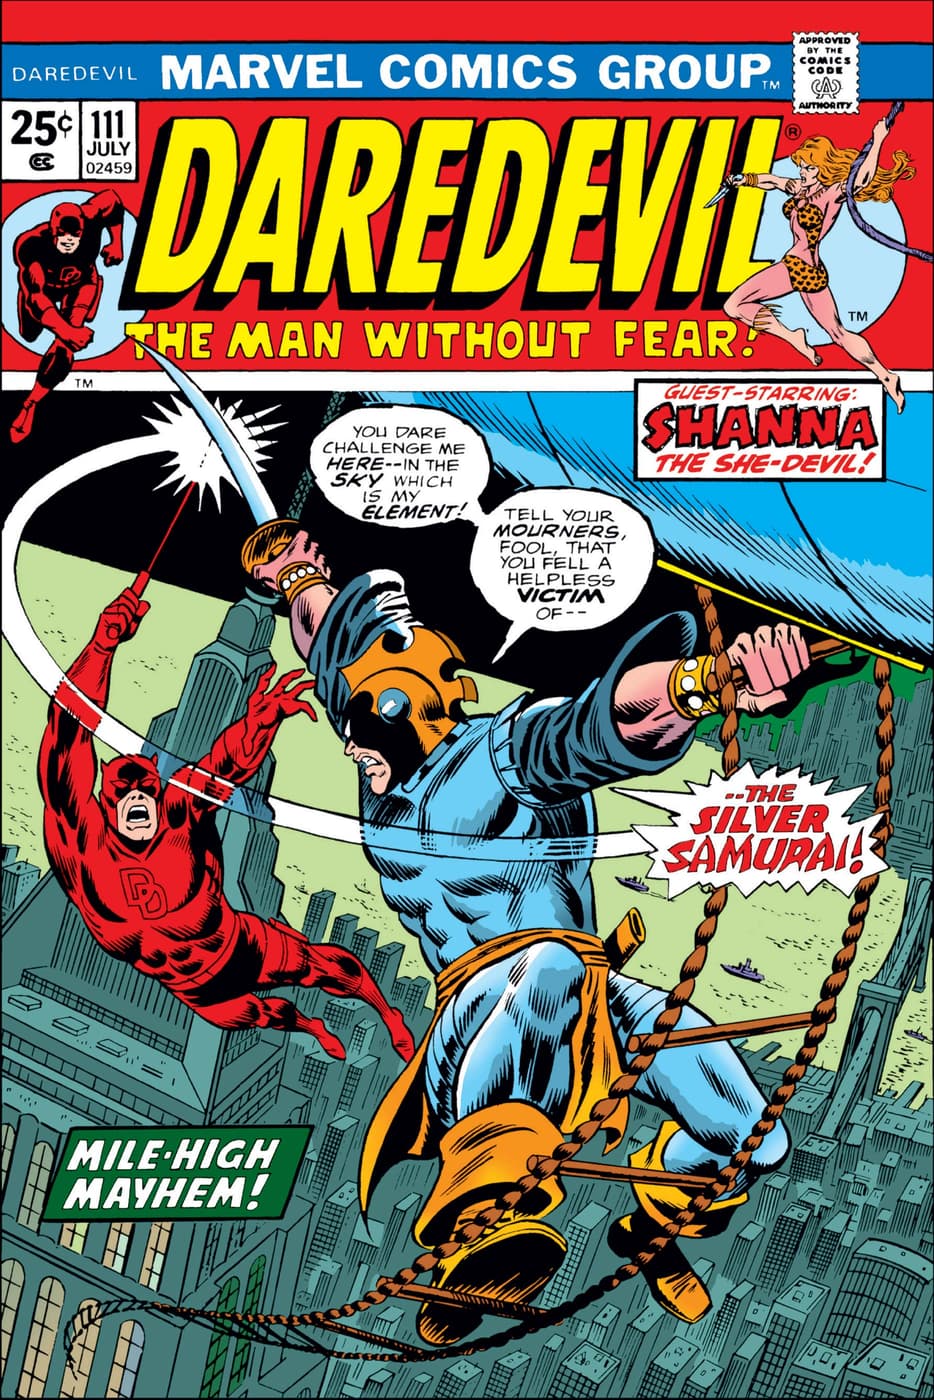 DAREDEVIL (1964) #111 Silver Samurai